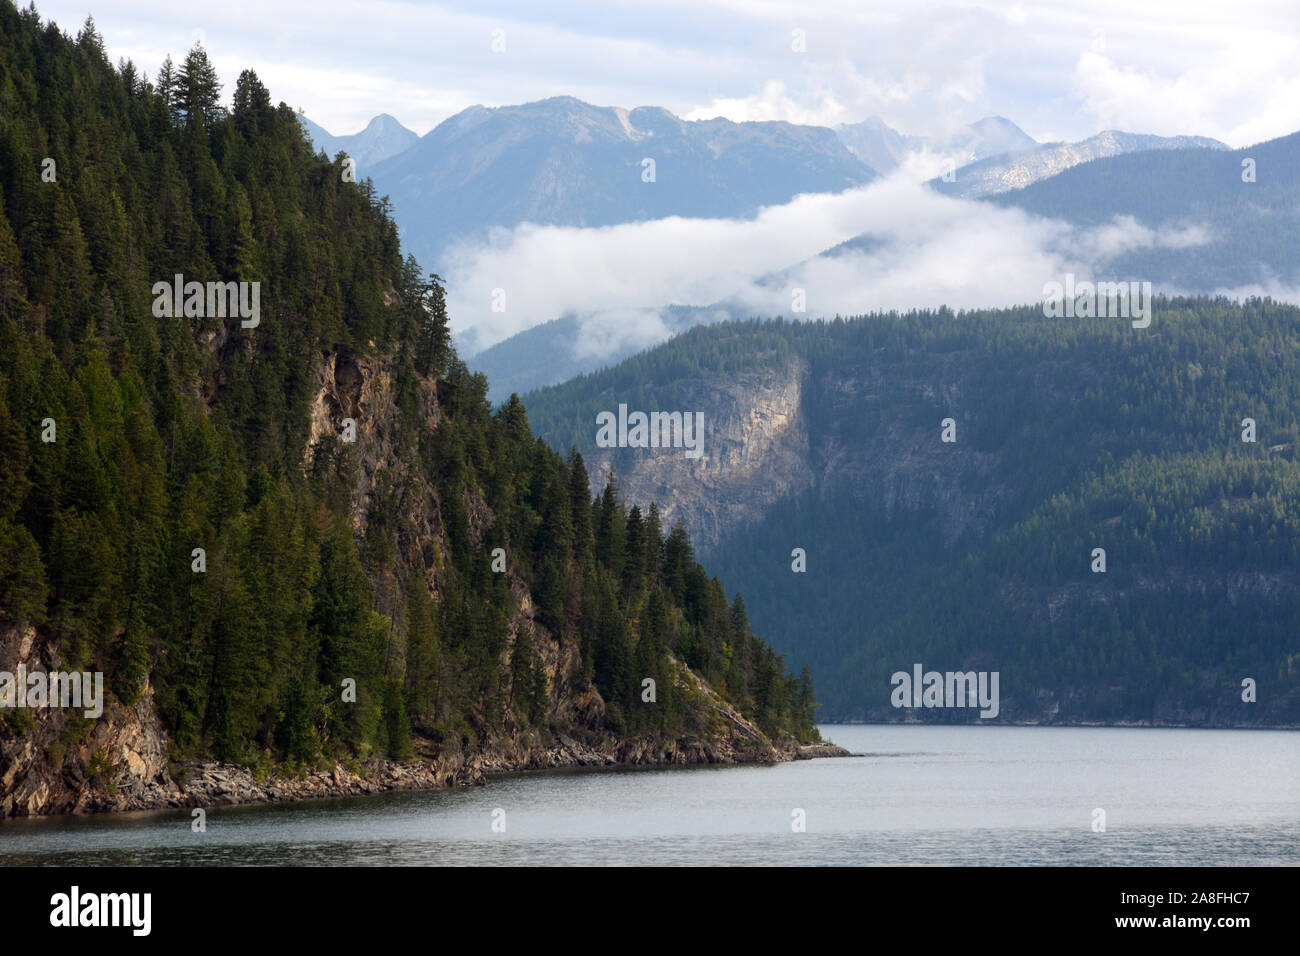 Le lac Kootenay et le Purcell Wilderness Conservancy Parc Provincial, dans les montagnes Purcell, de la région de Kootenay, en Colombie-Britannique, Canada. Banque D'Images